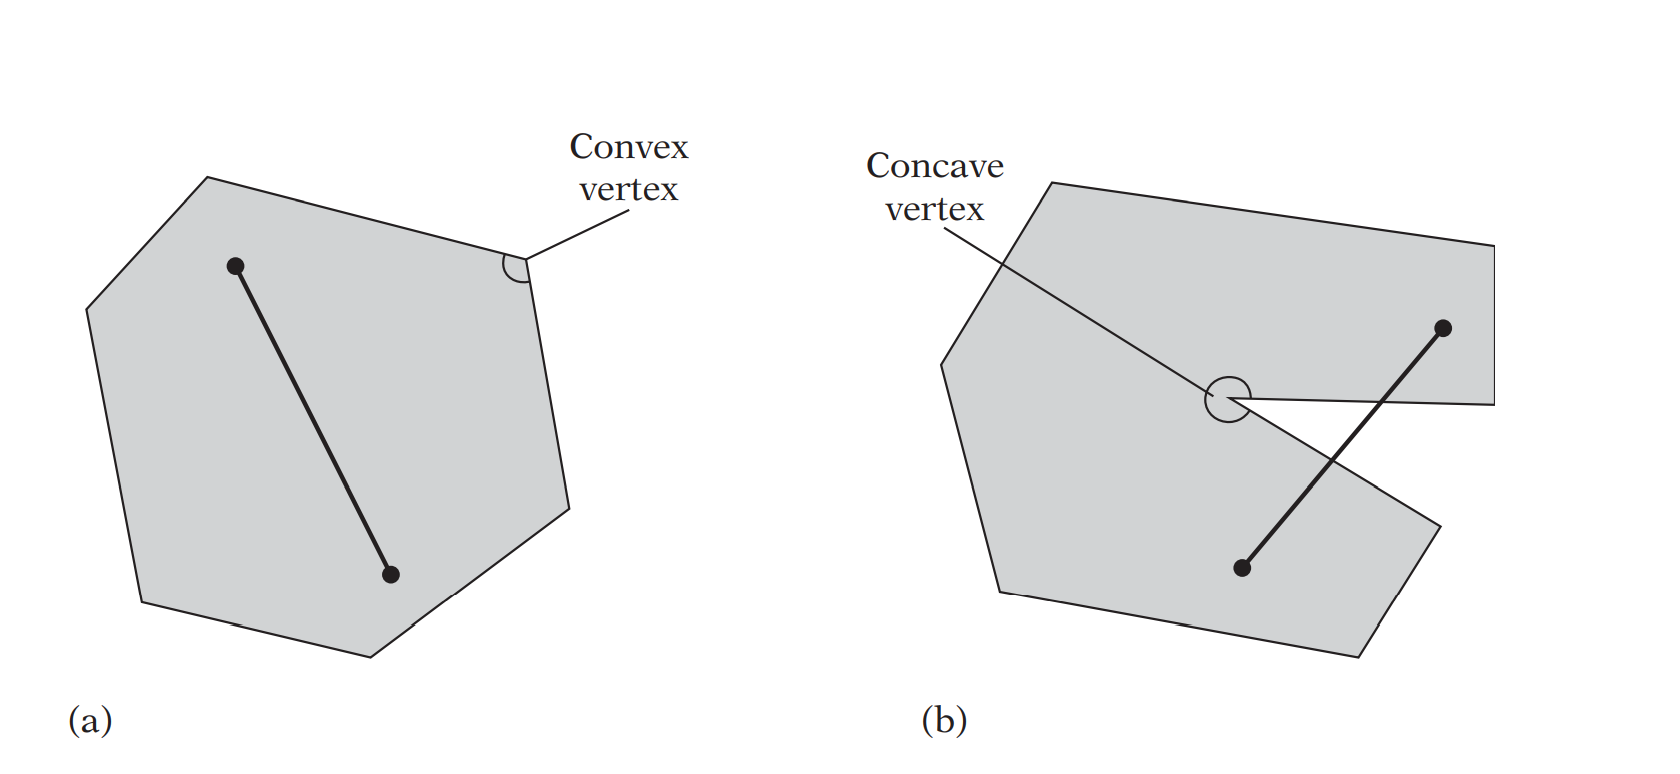 Convex vertex and Concave vertex